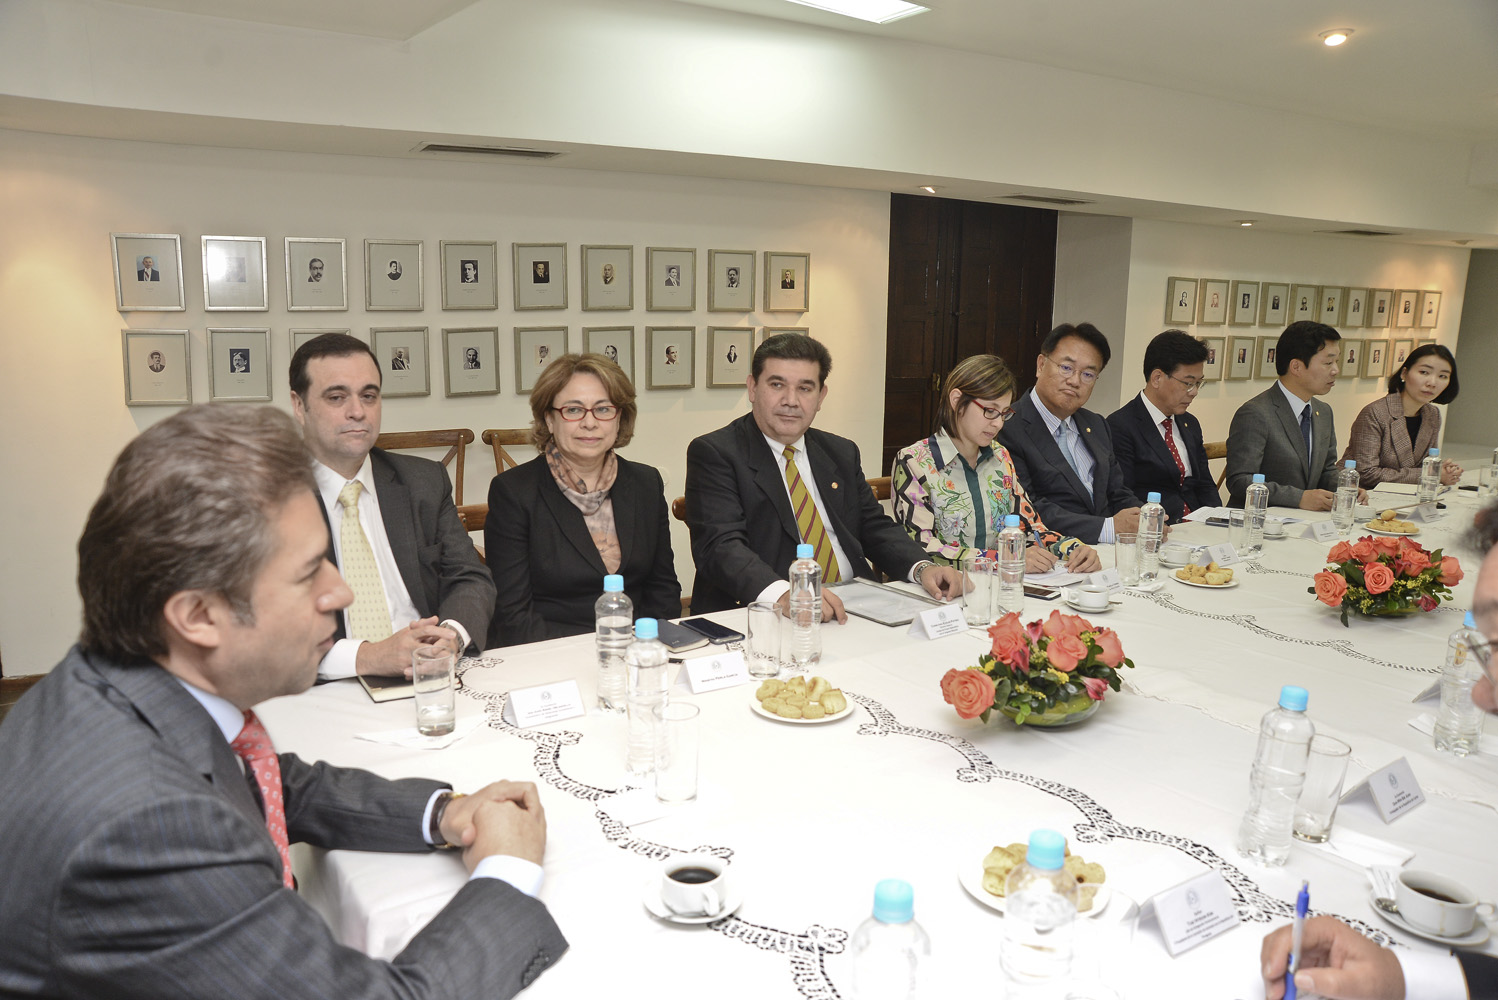 Congresistas coreanos expresaron interés de empresas y empresarios de Corea en radicar sus inversiones en Paraguay